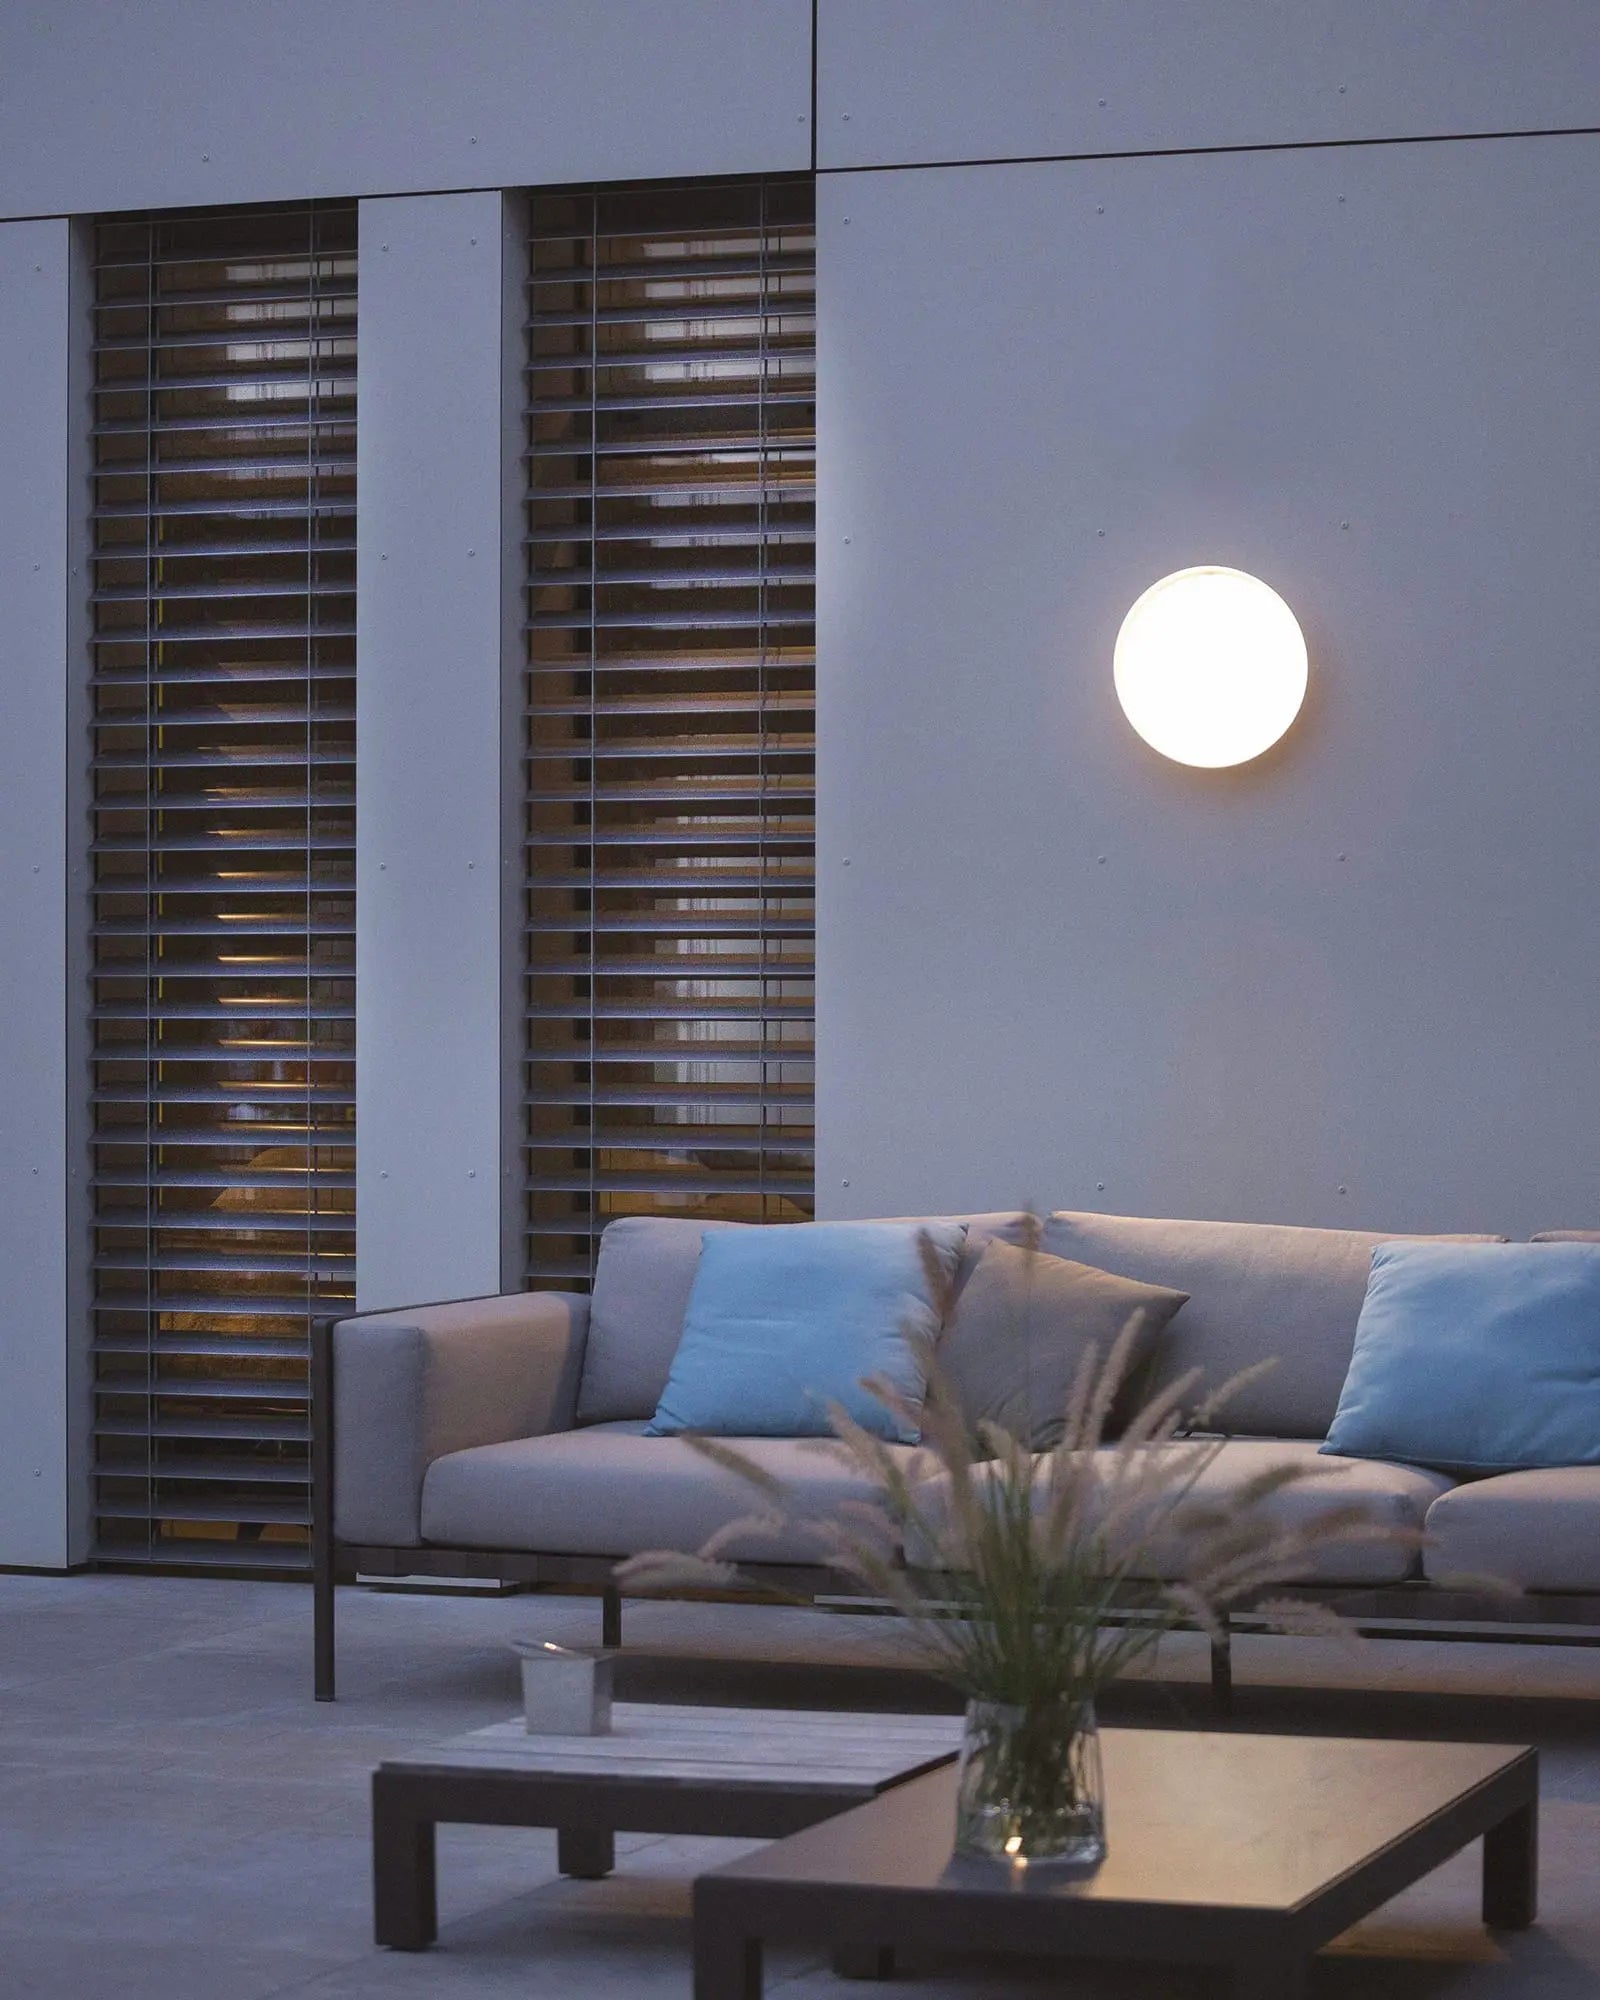 Mona Outdoor circular wall light above an outdoor lounge area